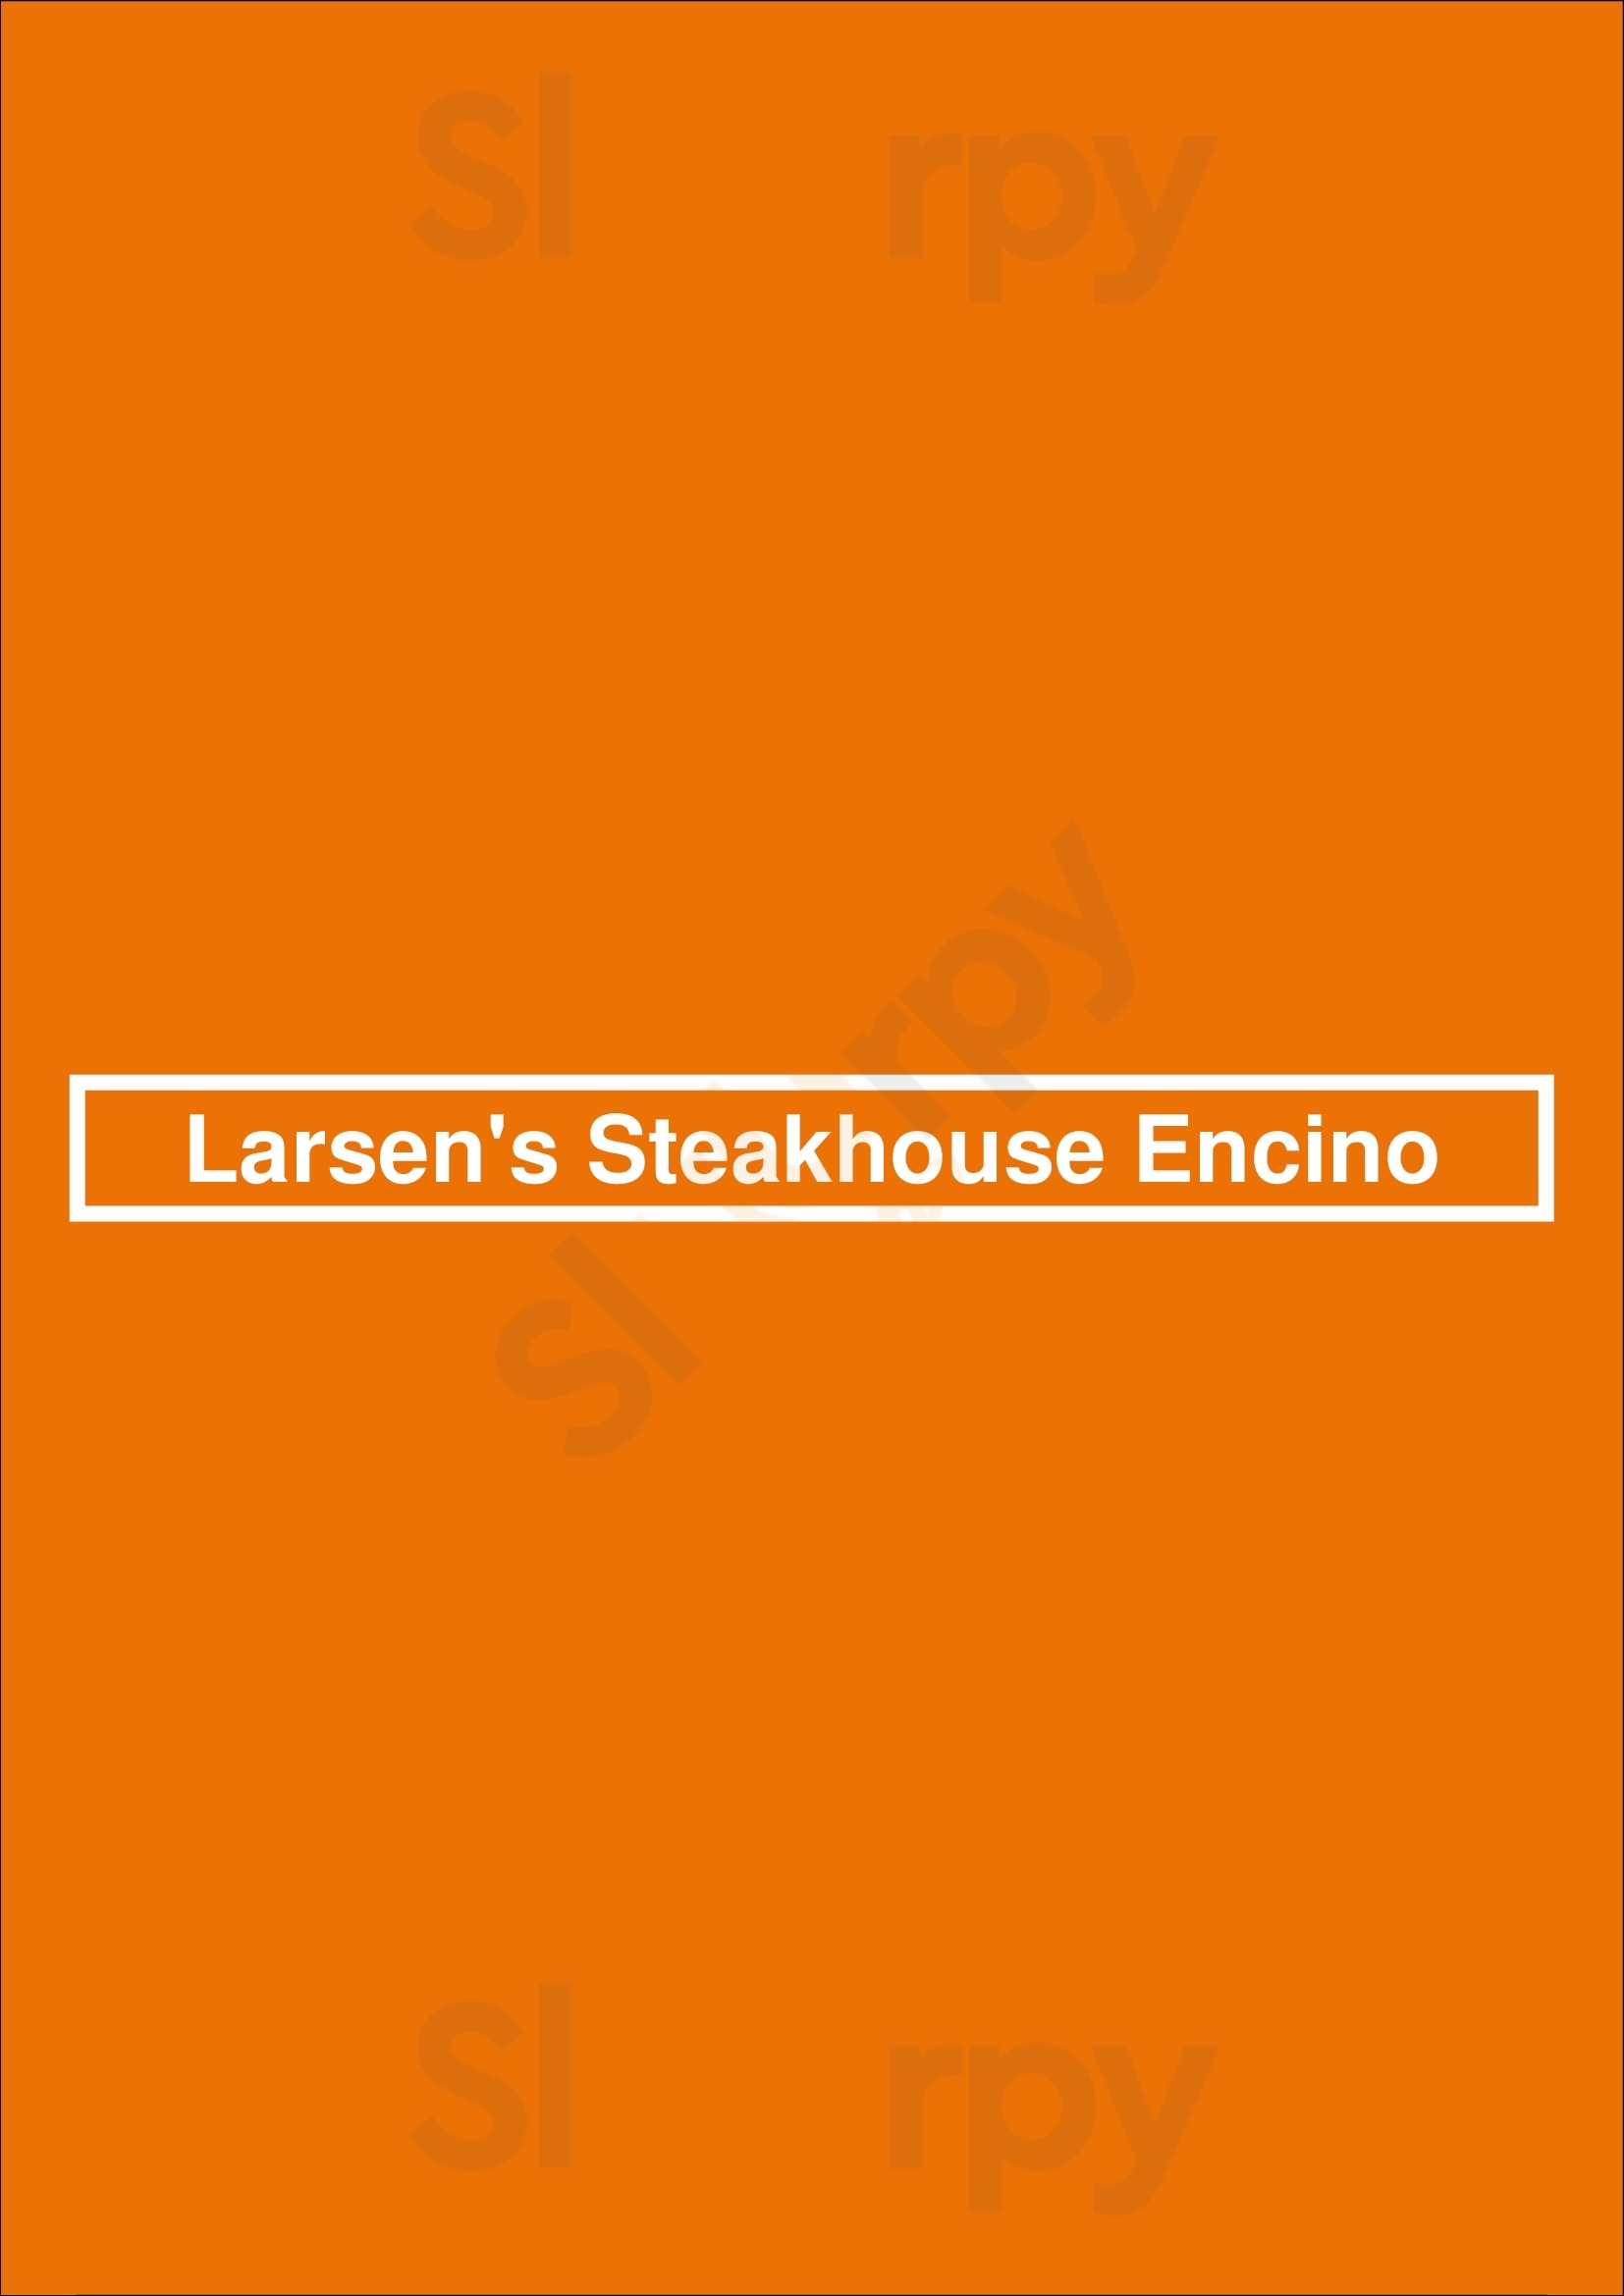 Larsen's Steakhouse Encino Los Angeles Menu - 1